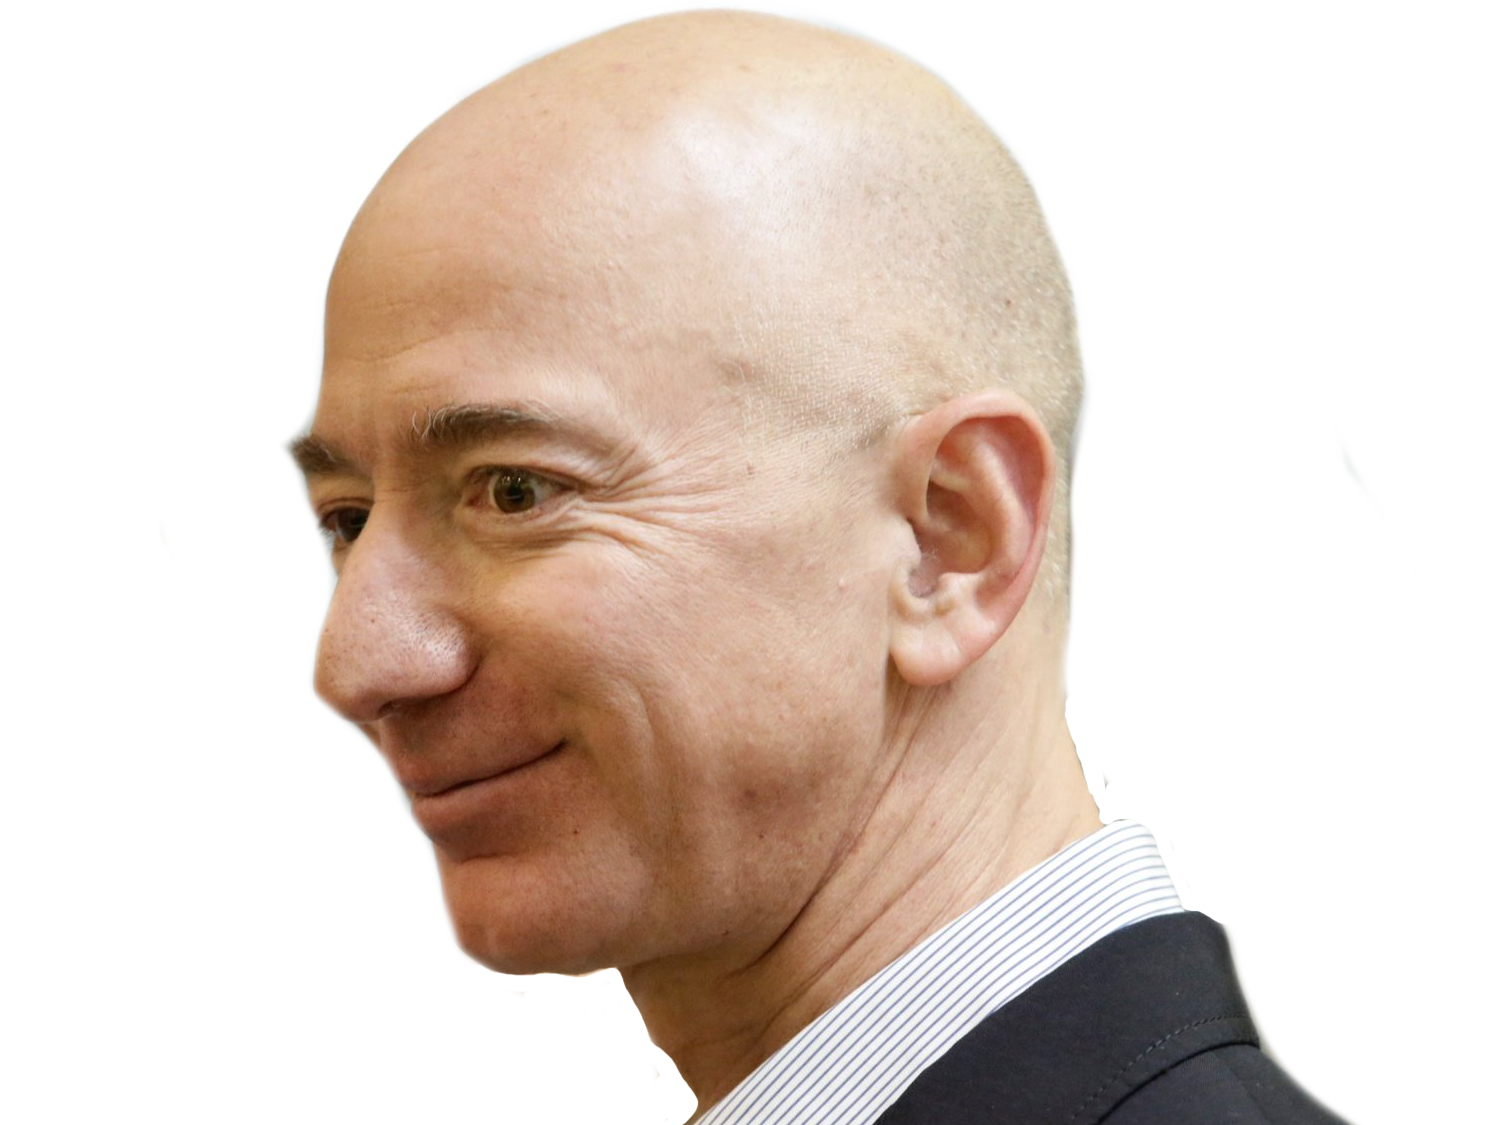 Jeff Bezos "Chaque jour où tu es ma pute, je te file 5 millions" sur